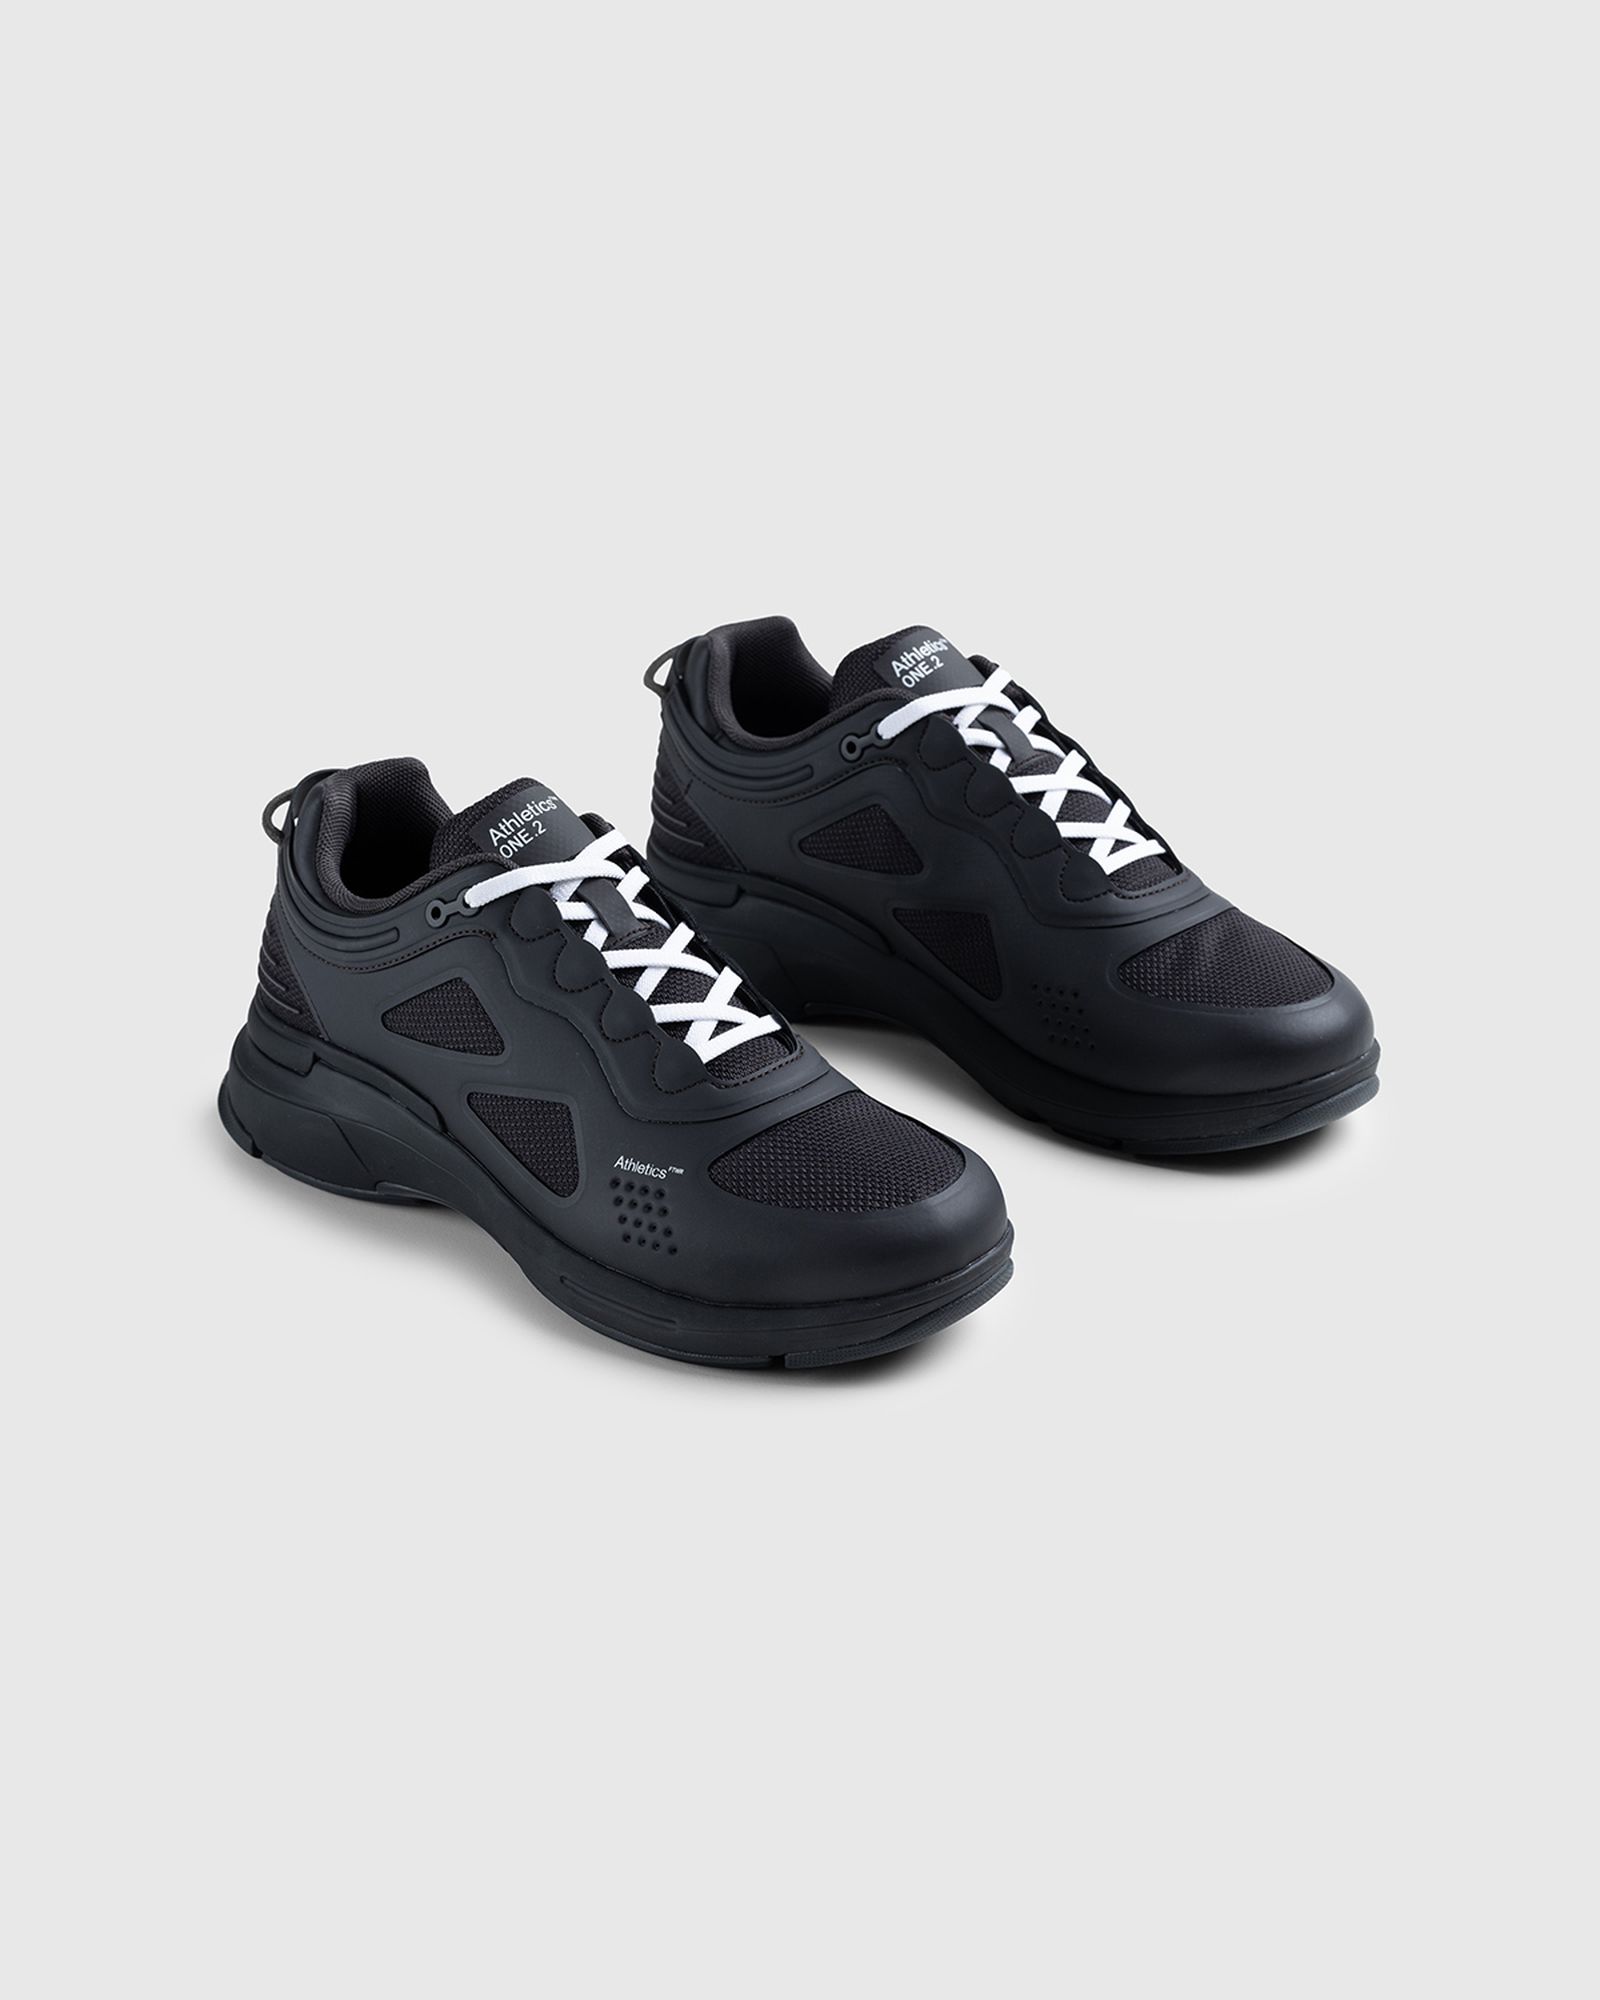 athletics-footwear-one-shop-02